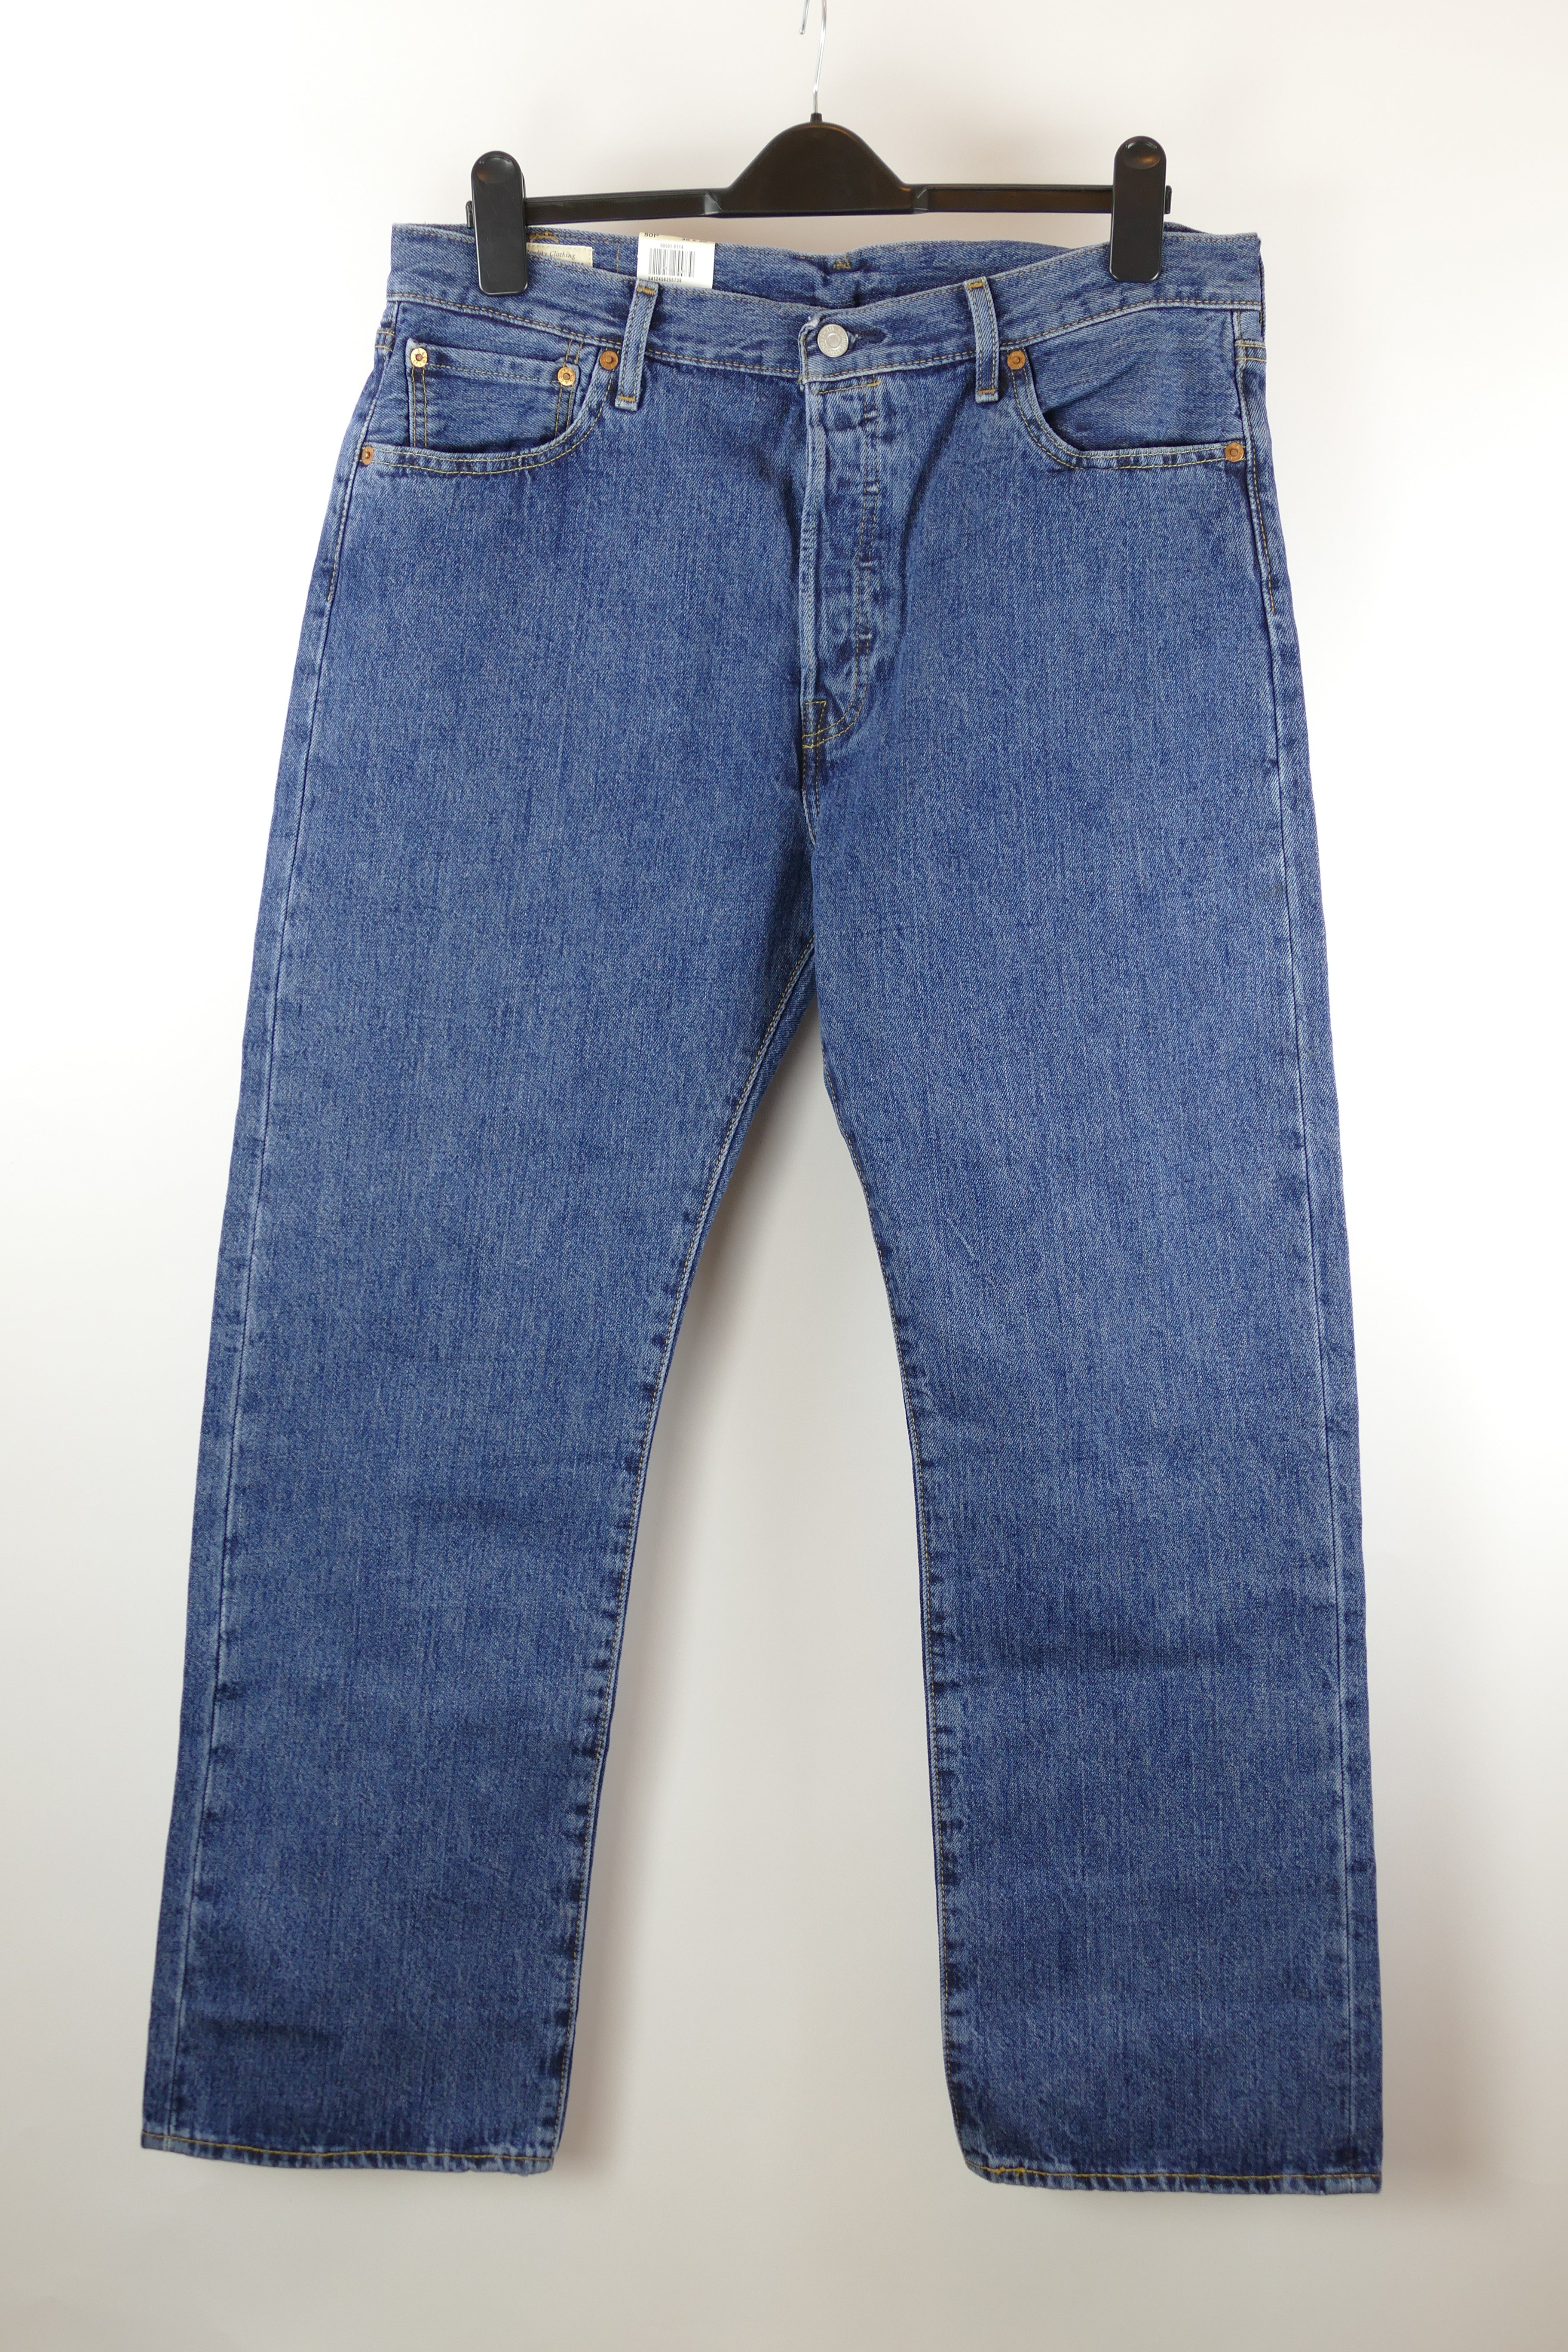 Blaue Herren Jeans, Gr. 52, 501 ORIGINAL LEVI STRAUSS & CO.